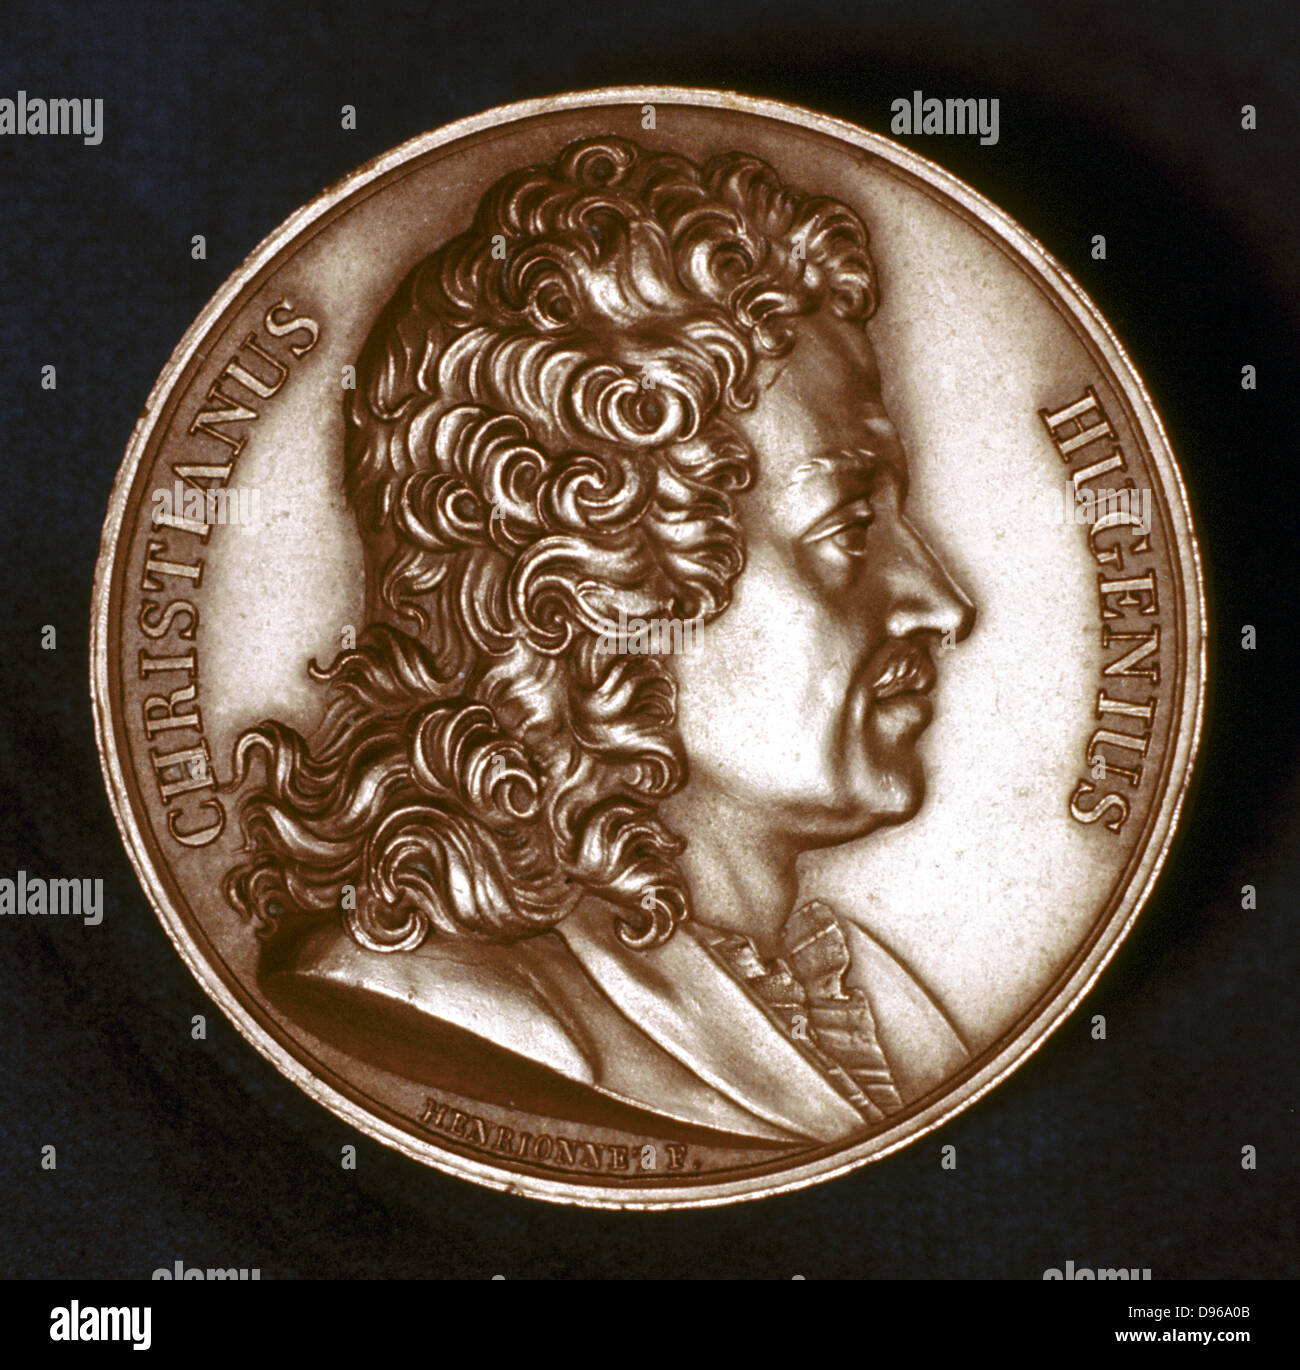 Christiaan Huyghens (1629-95), physicien néerlandais. Horloge à pendule : Théorie ondulatoire de la lumière. Portrait de l'avers de la médaille commémorative Banque D'Images